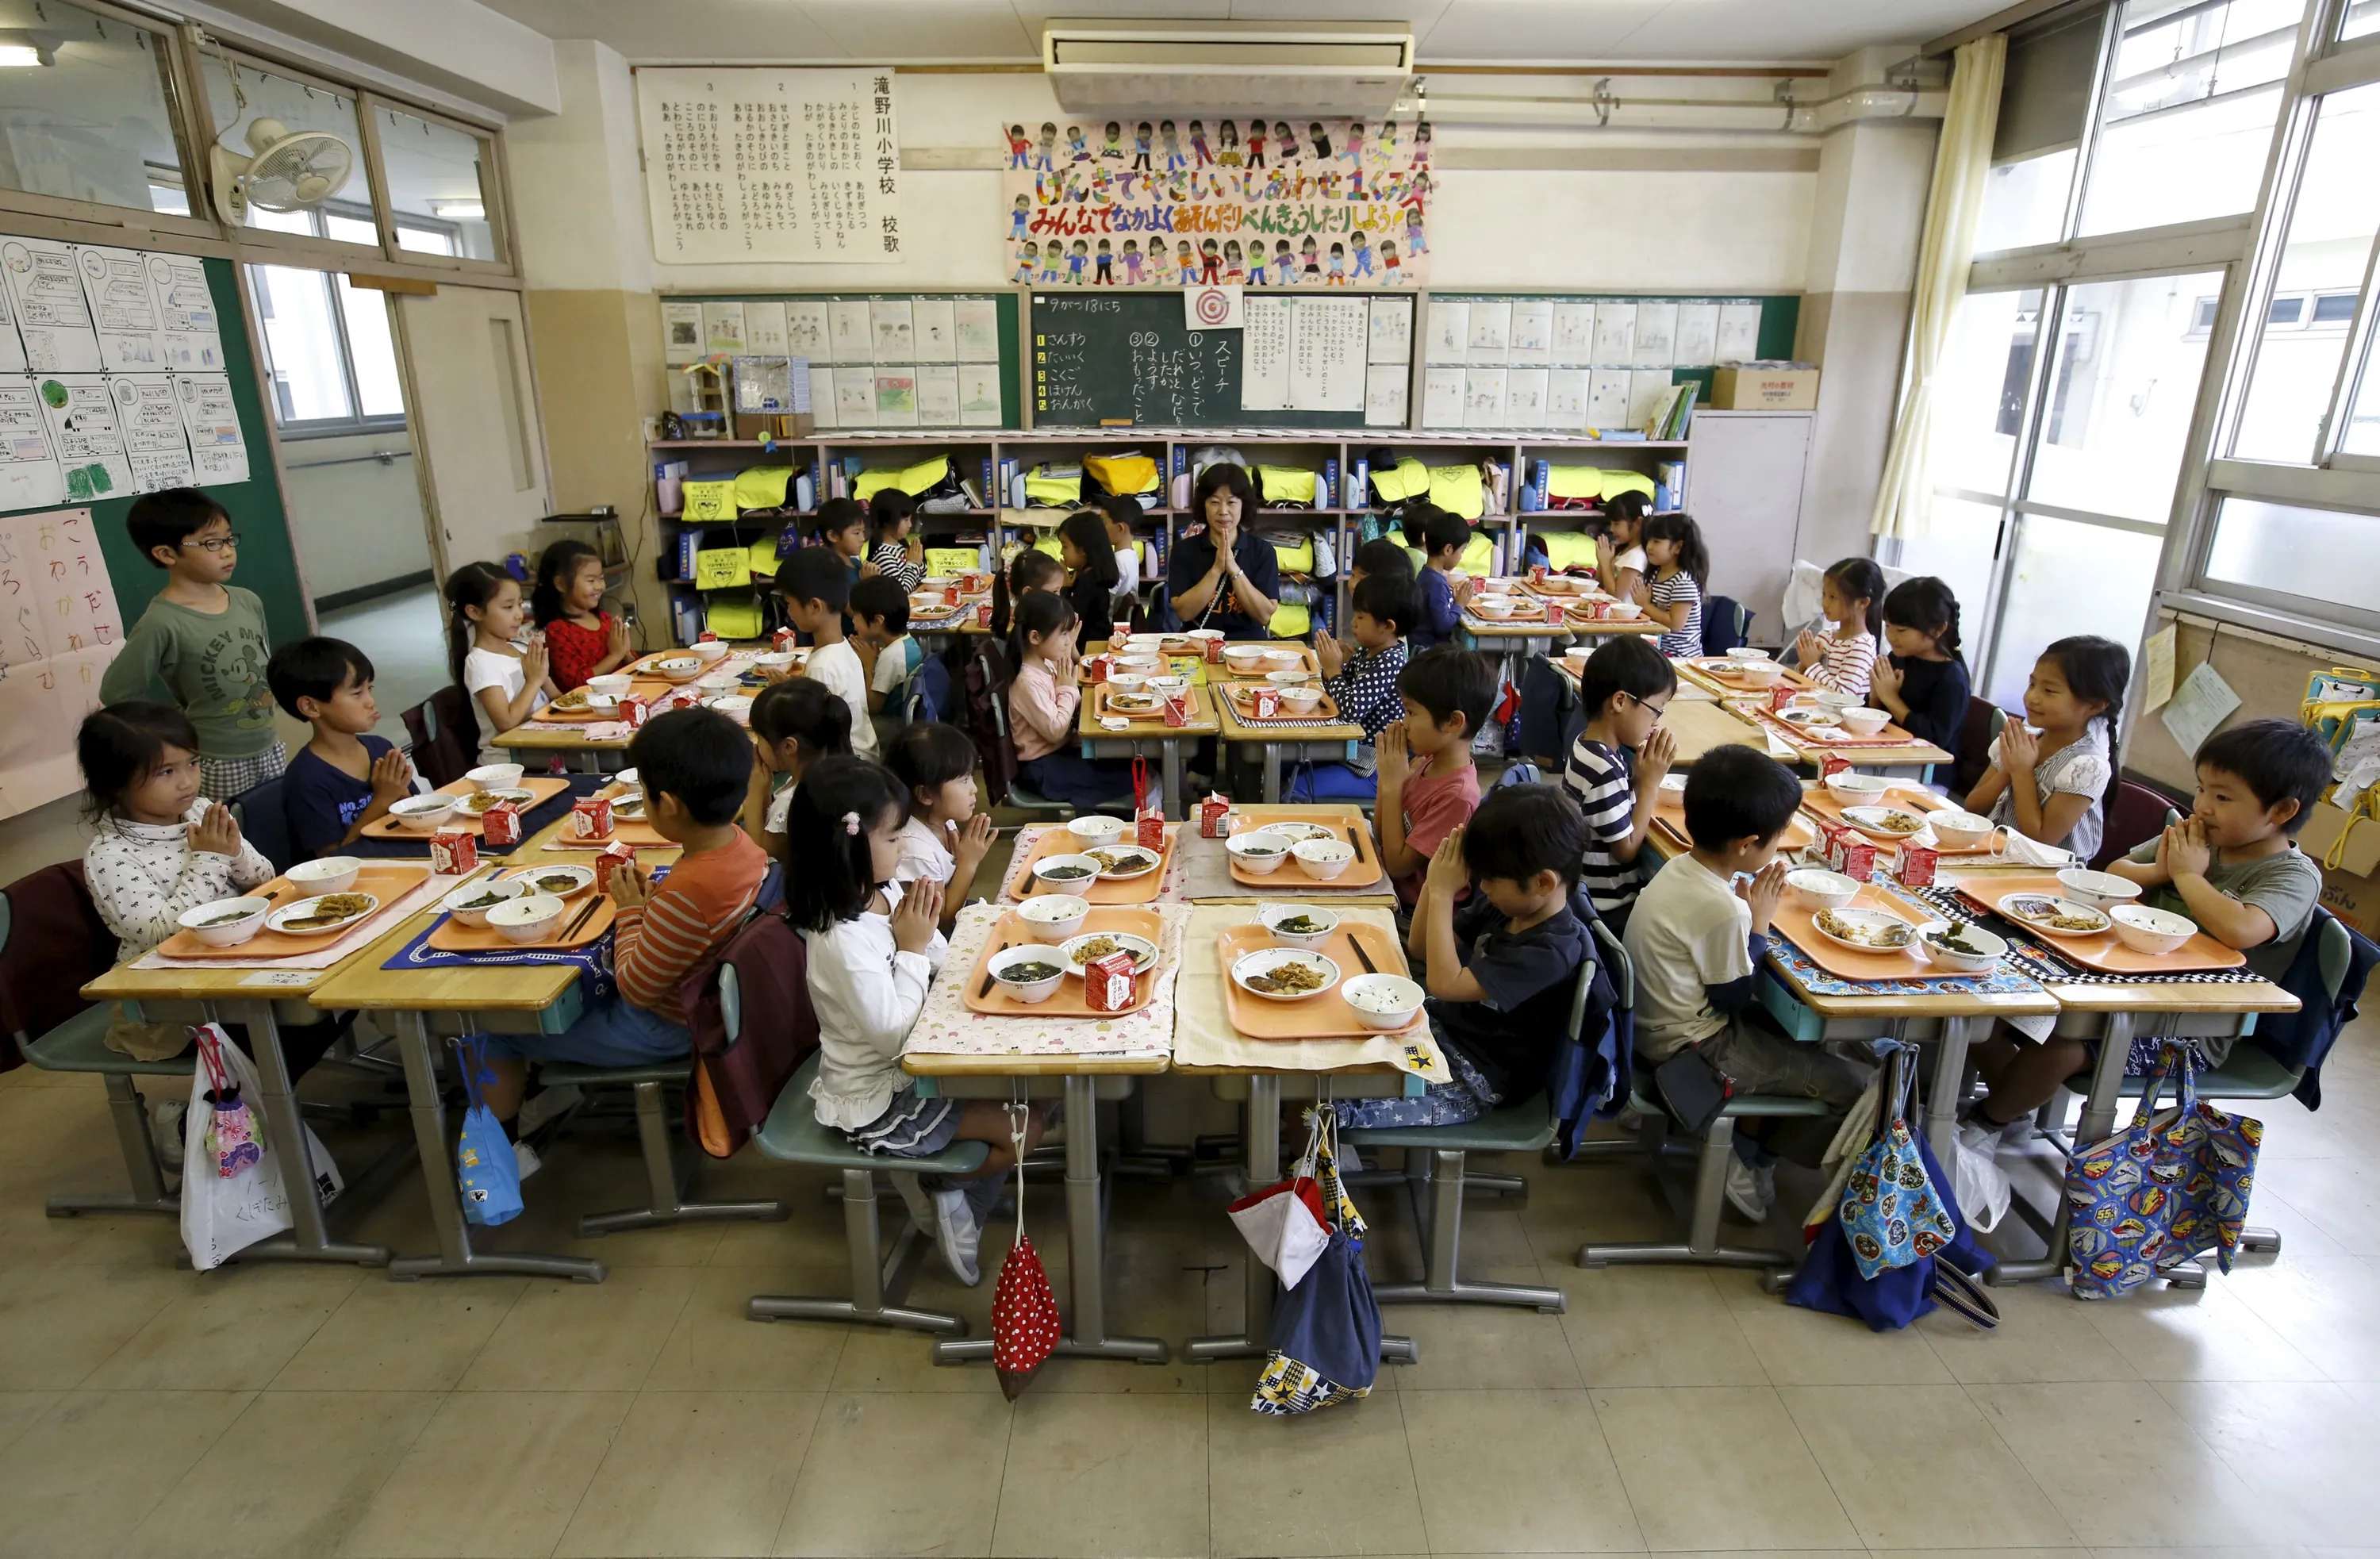 Япония школа учитель. Школа в Японии начальная школа. Школа Сасебо Япония. Япония школа столовая. Столовые в японских школах.